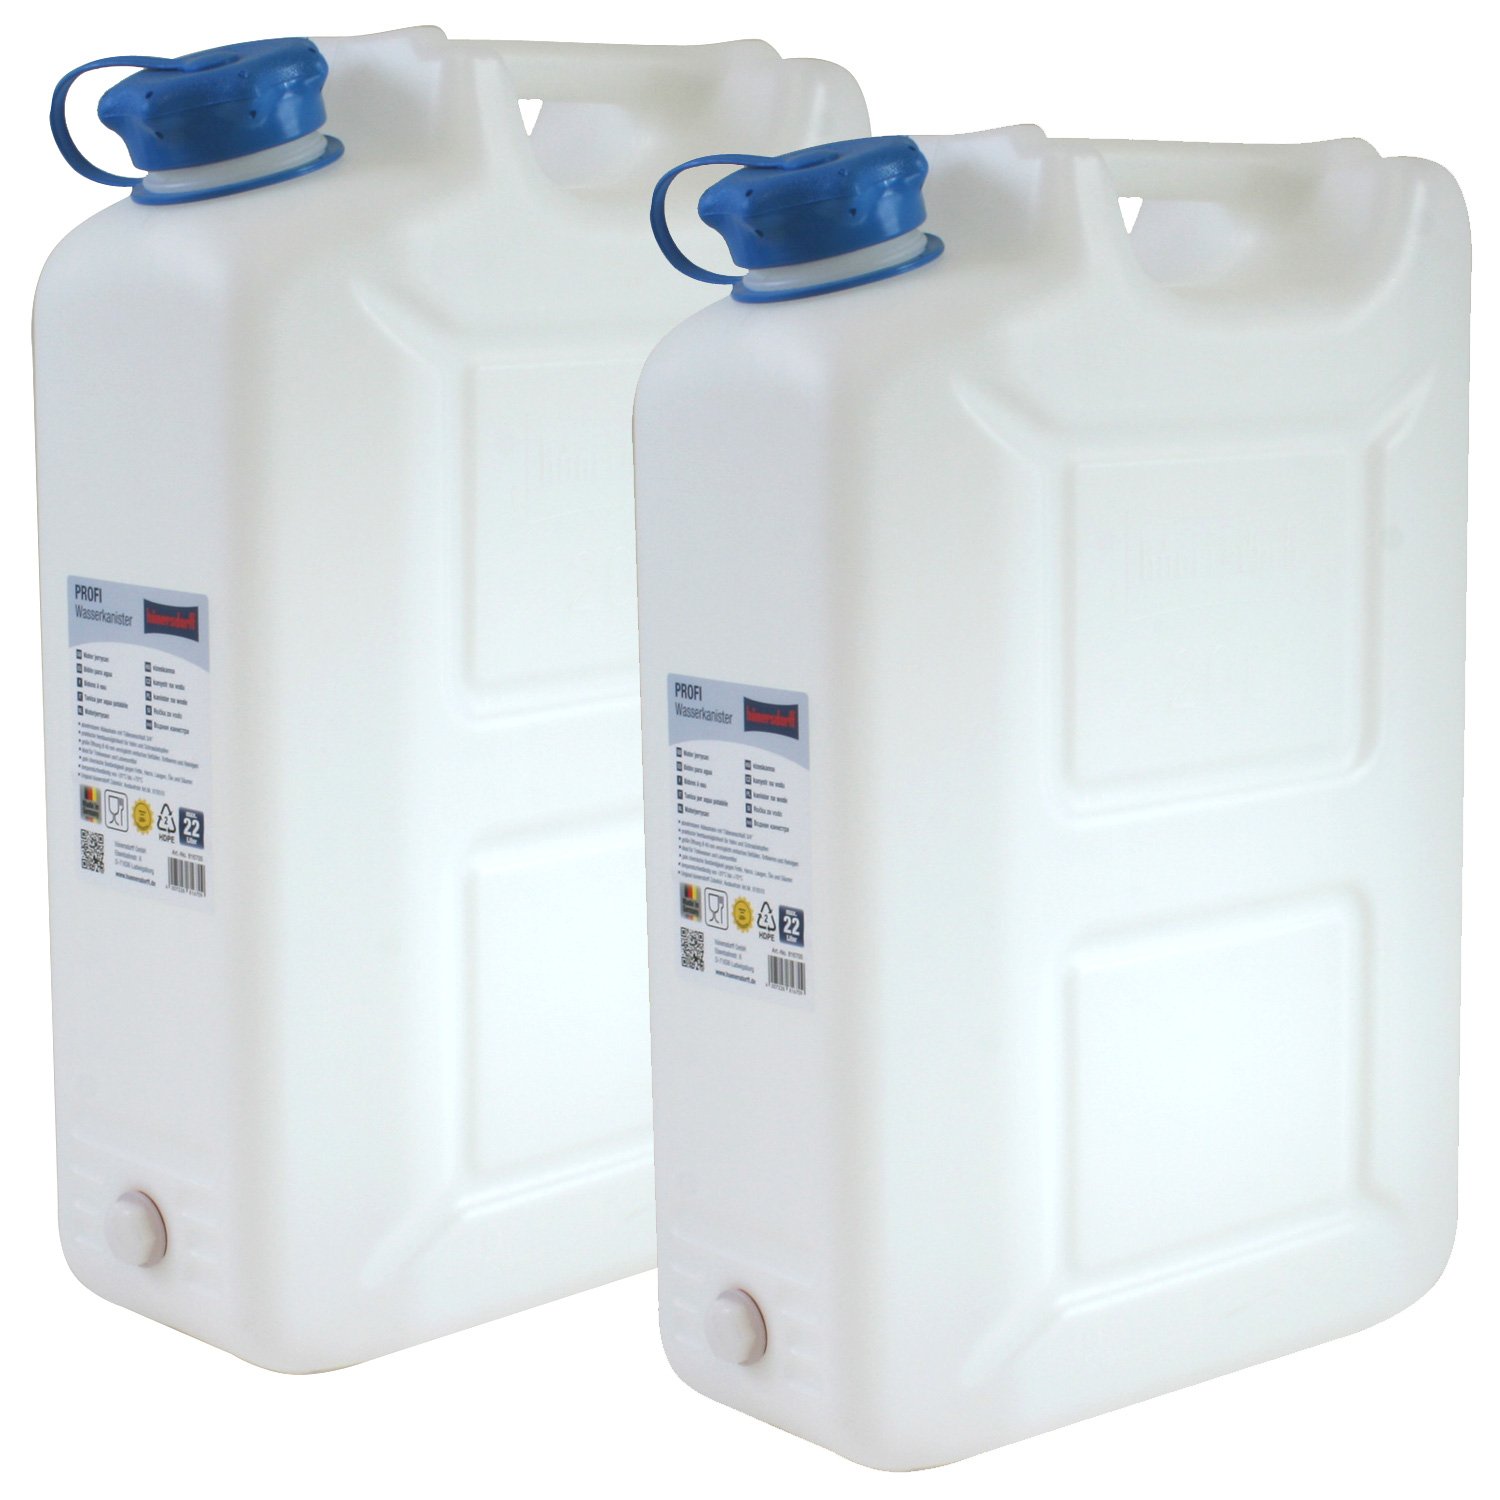 2x Wasserkanister PROFI 20 Liter mit Hahn NEU Trinkwasser-Kanister 2er Set 20L von Hergestellt für BAUPROFI